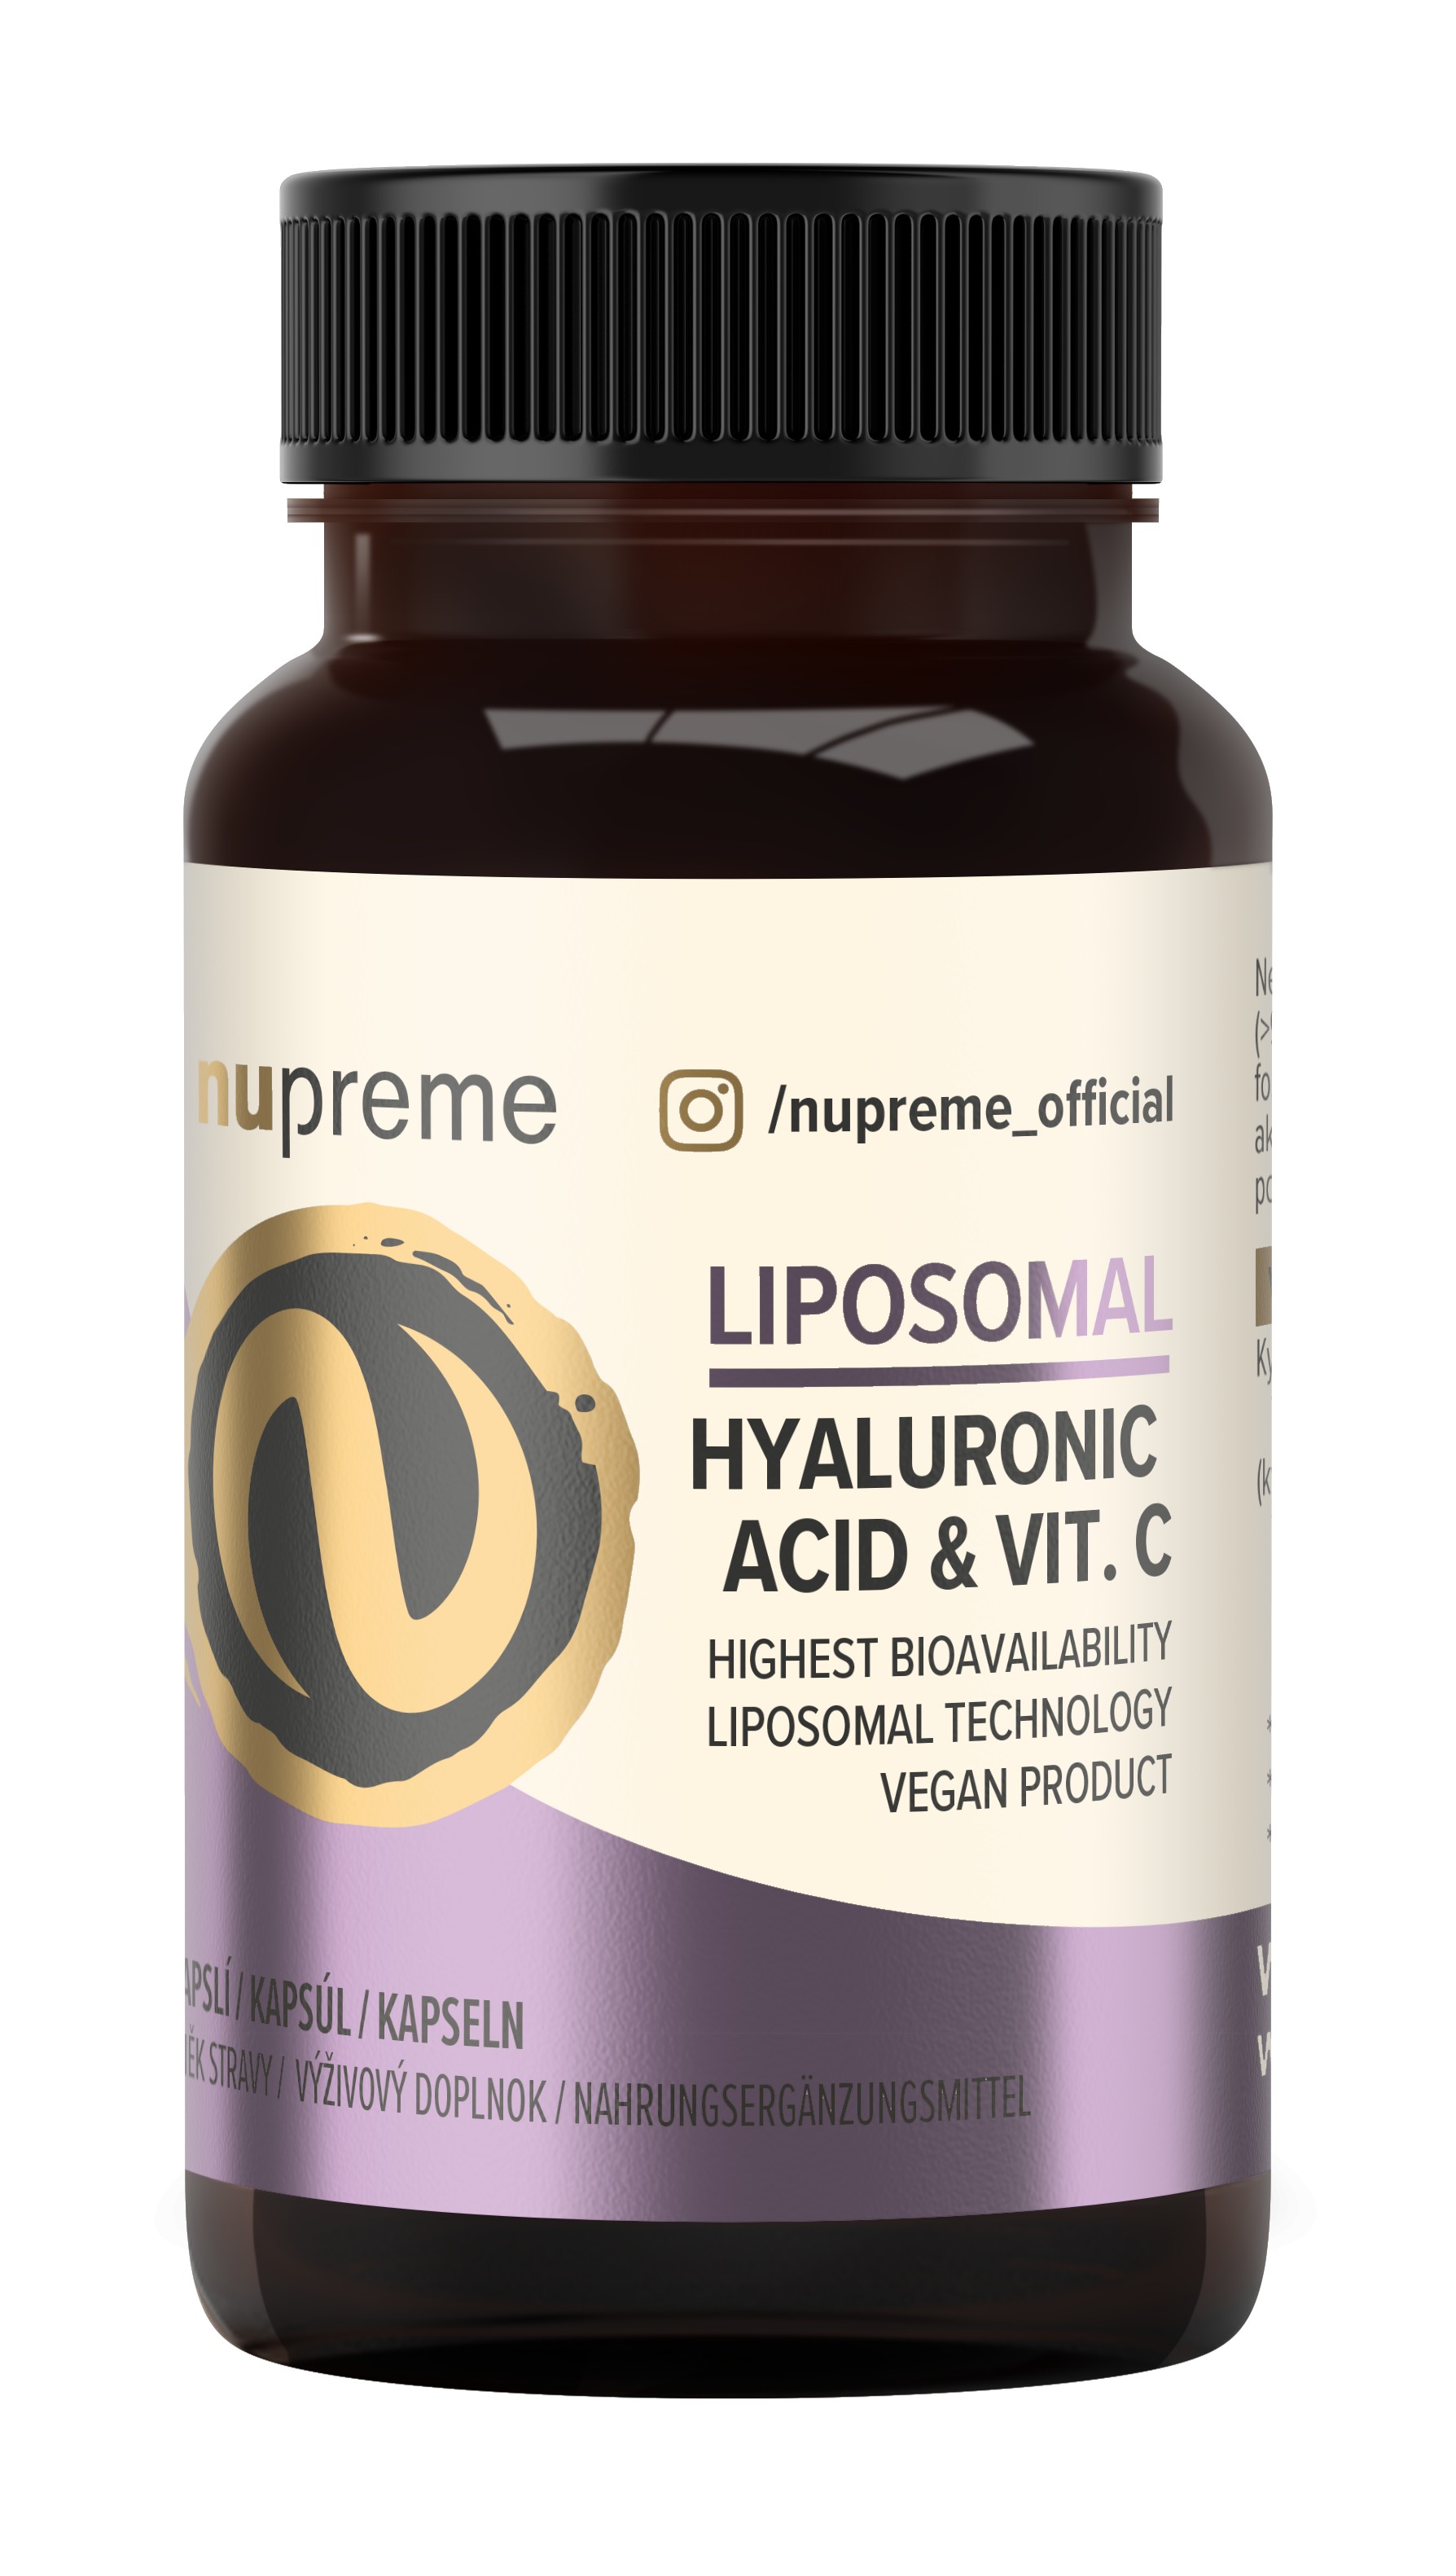 Nupreme Liposomal kyselina hyaluronová + vit. C 30 kapslí